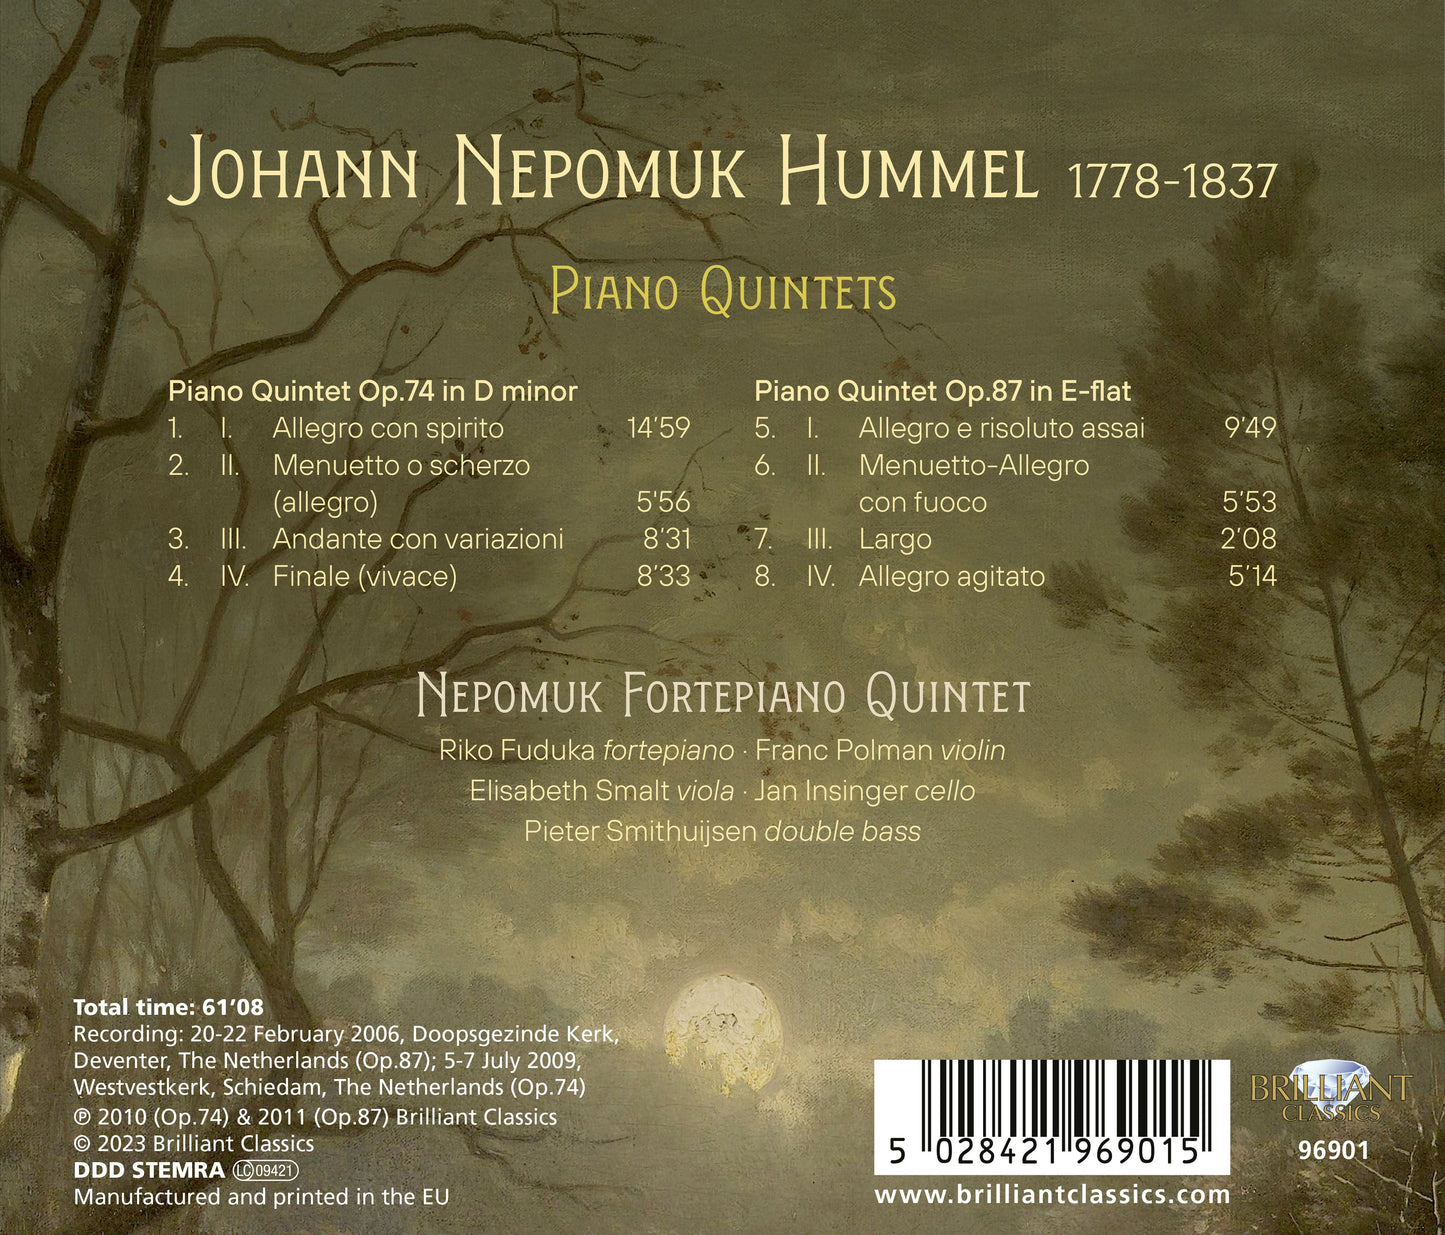 Hummel: Piano Quintets, Op. 74 & 87